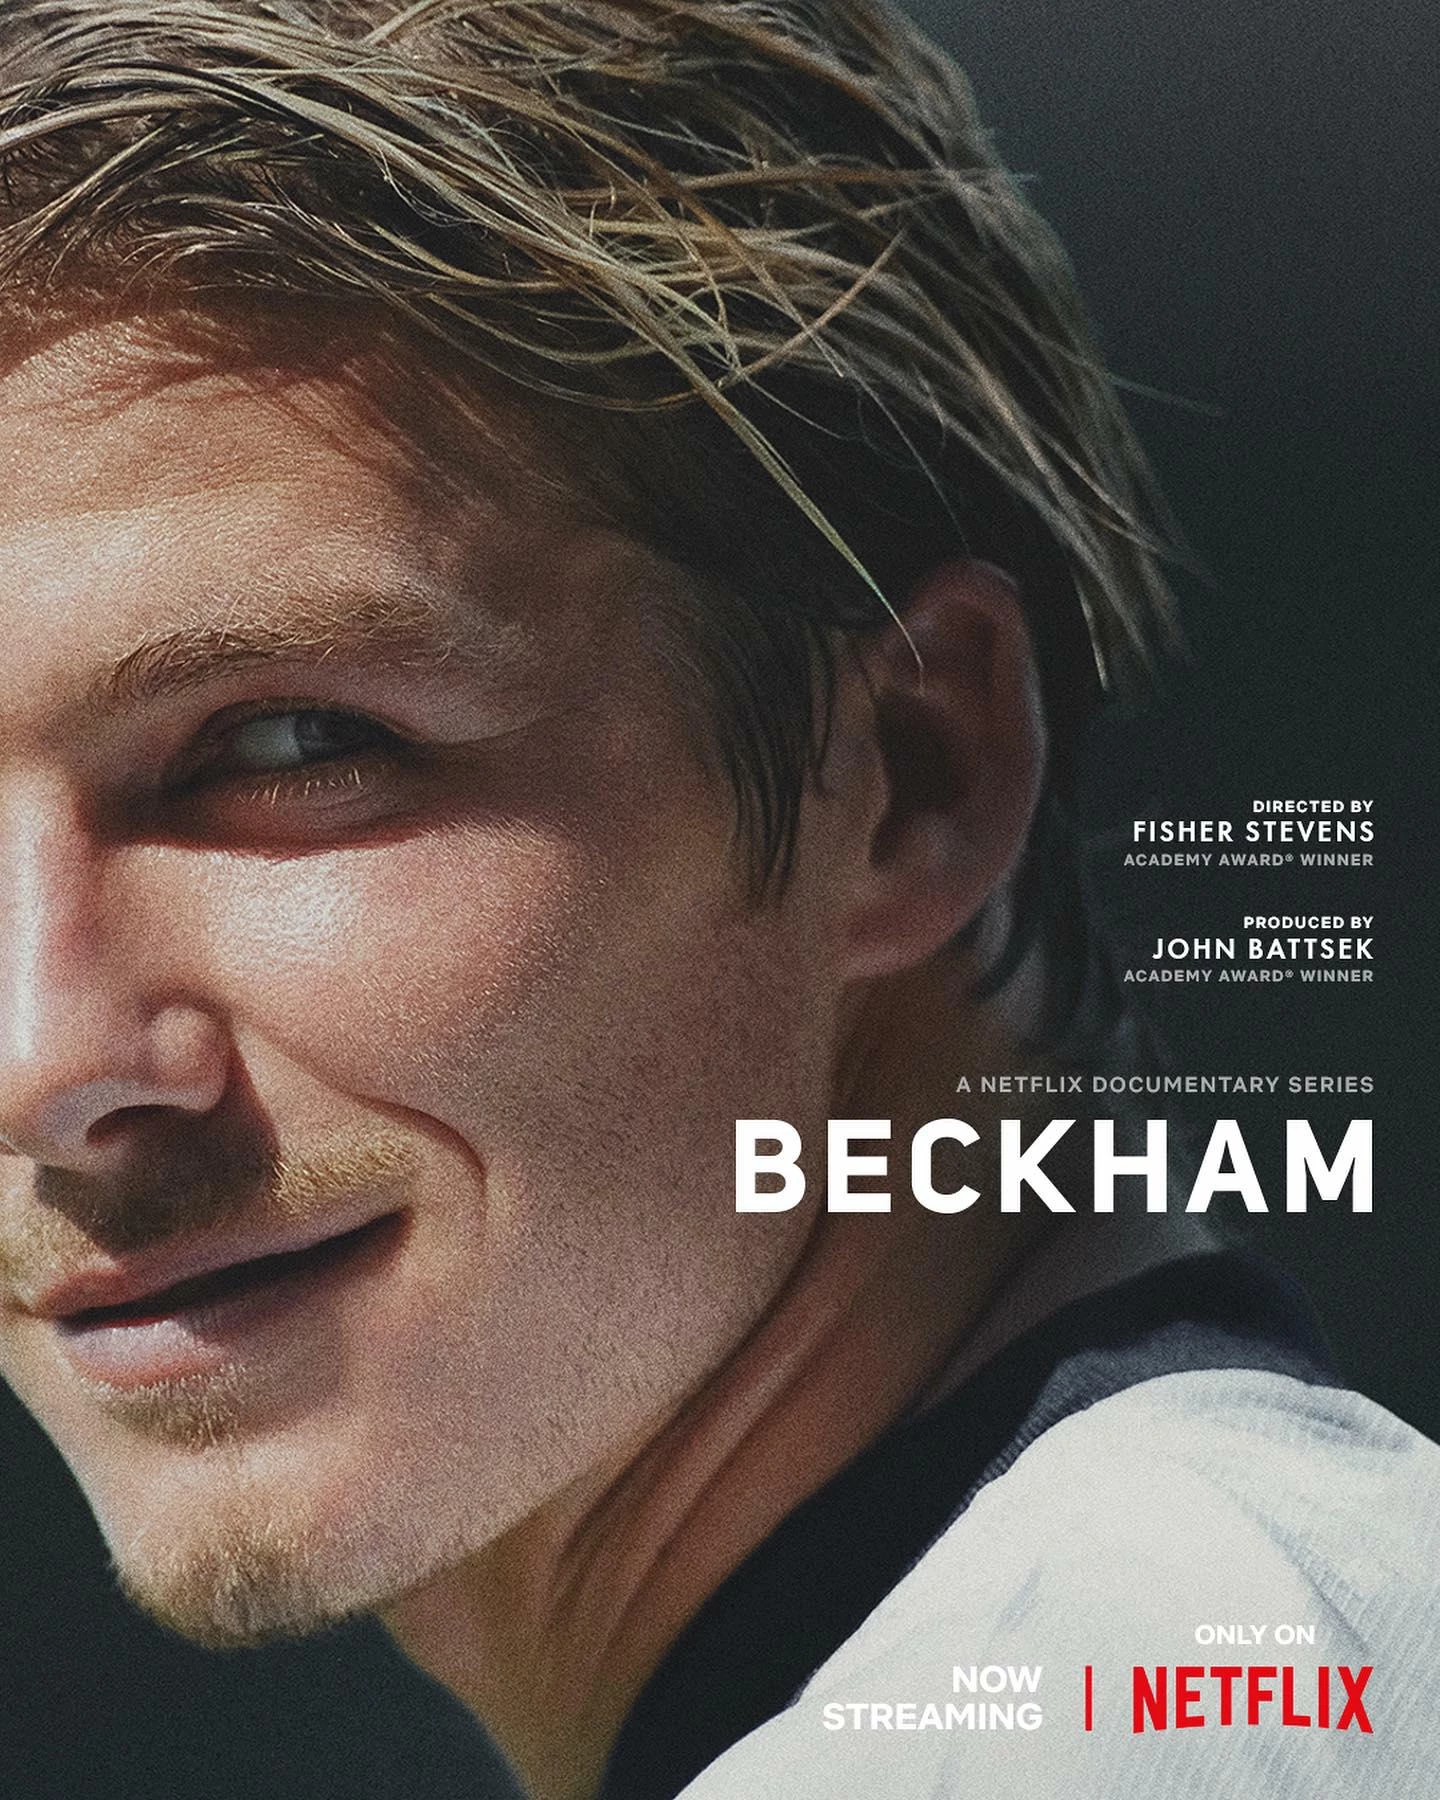 Netflix Documentary 'Beckham' Overview